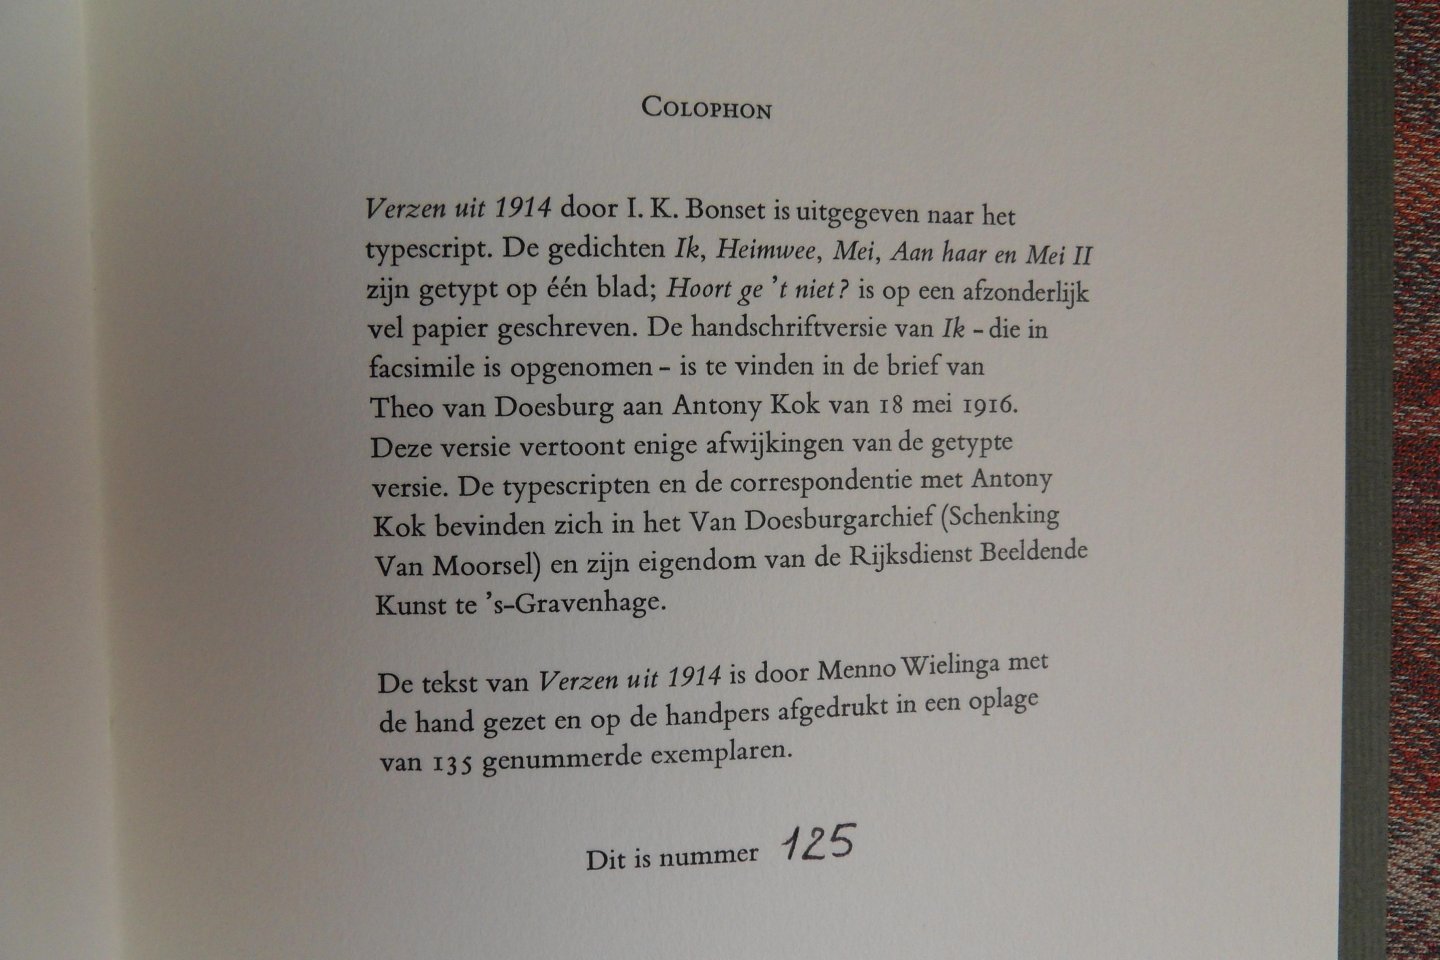 Bonset, i.k. (pseudoniem van Theo van Doesburg, 1883 - 1931). - Verzen uit 1914. [ Genummerd ex. 125 / 135 ].